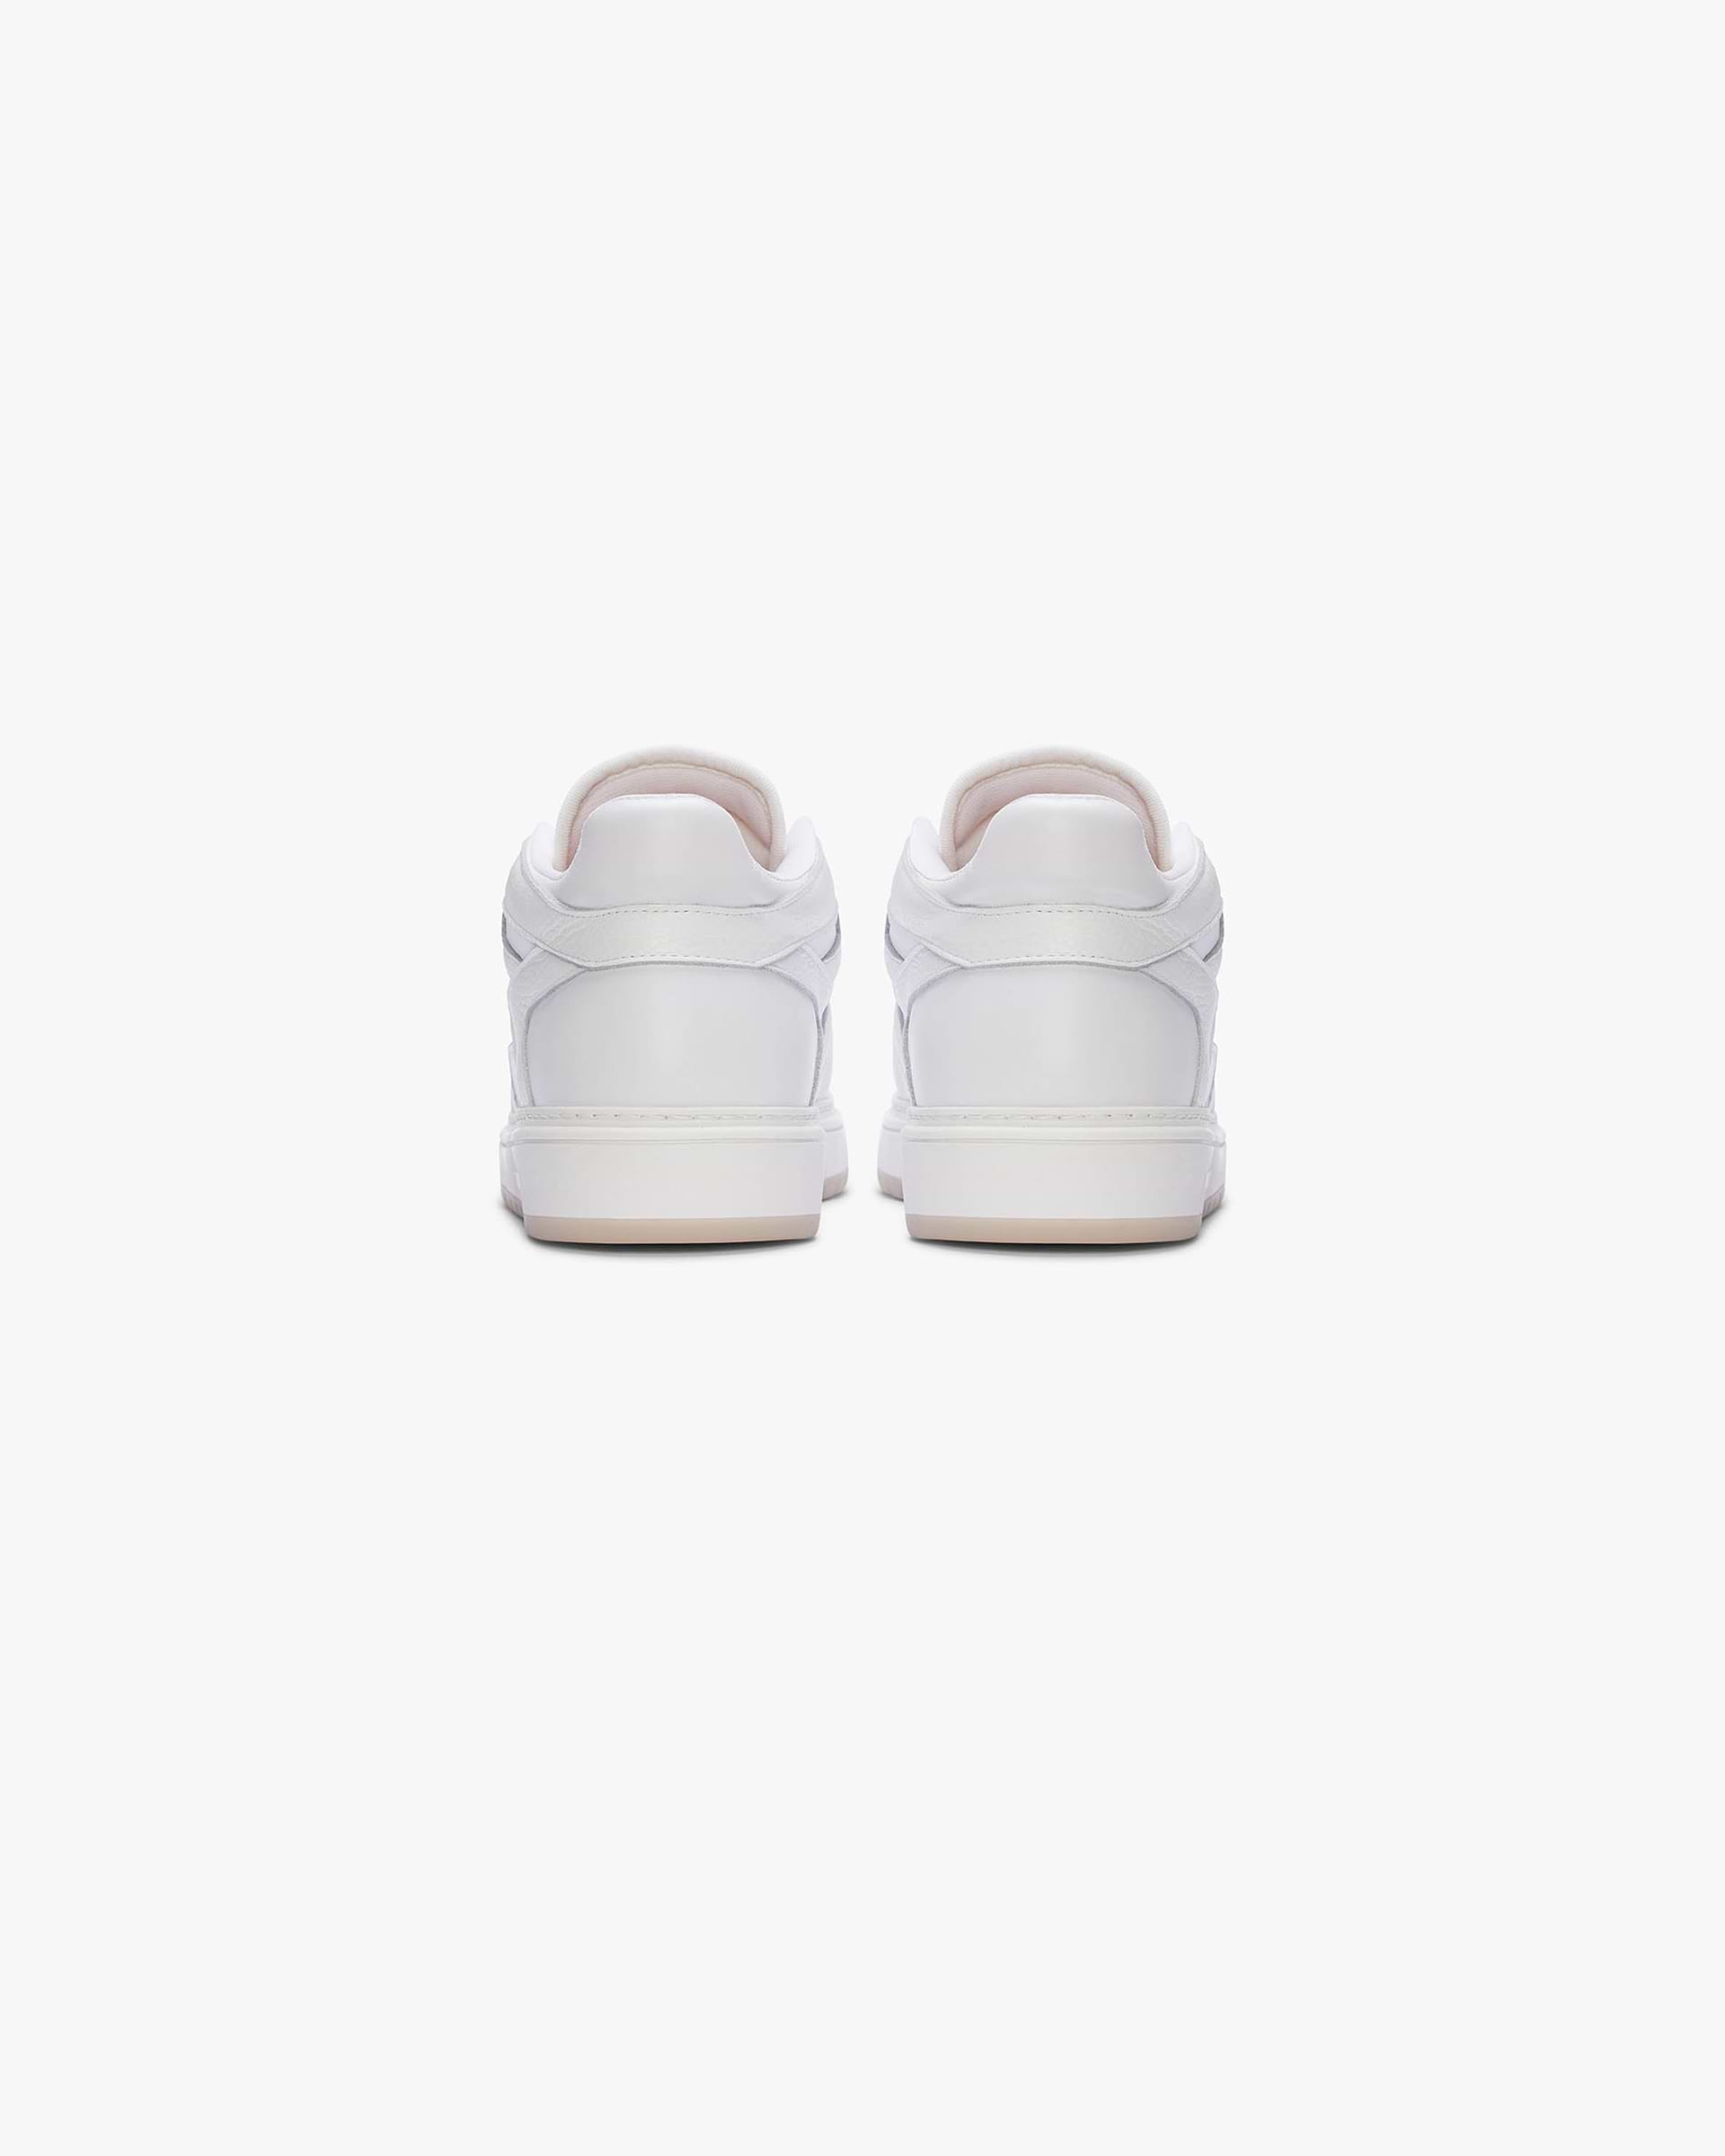 Reptor Low Sneakers | Flat White | REPRESENT CLO